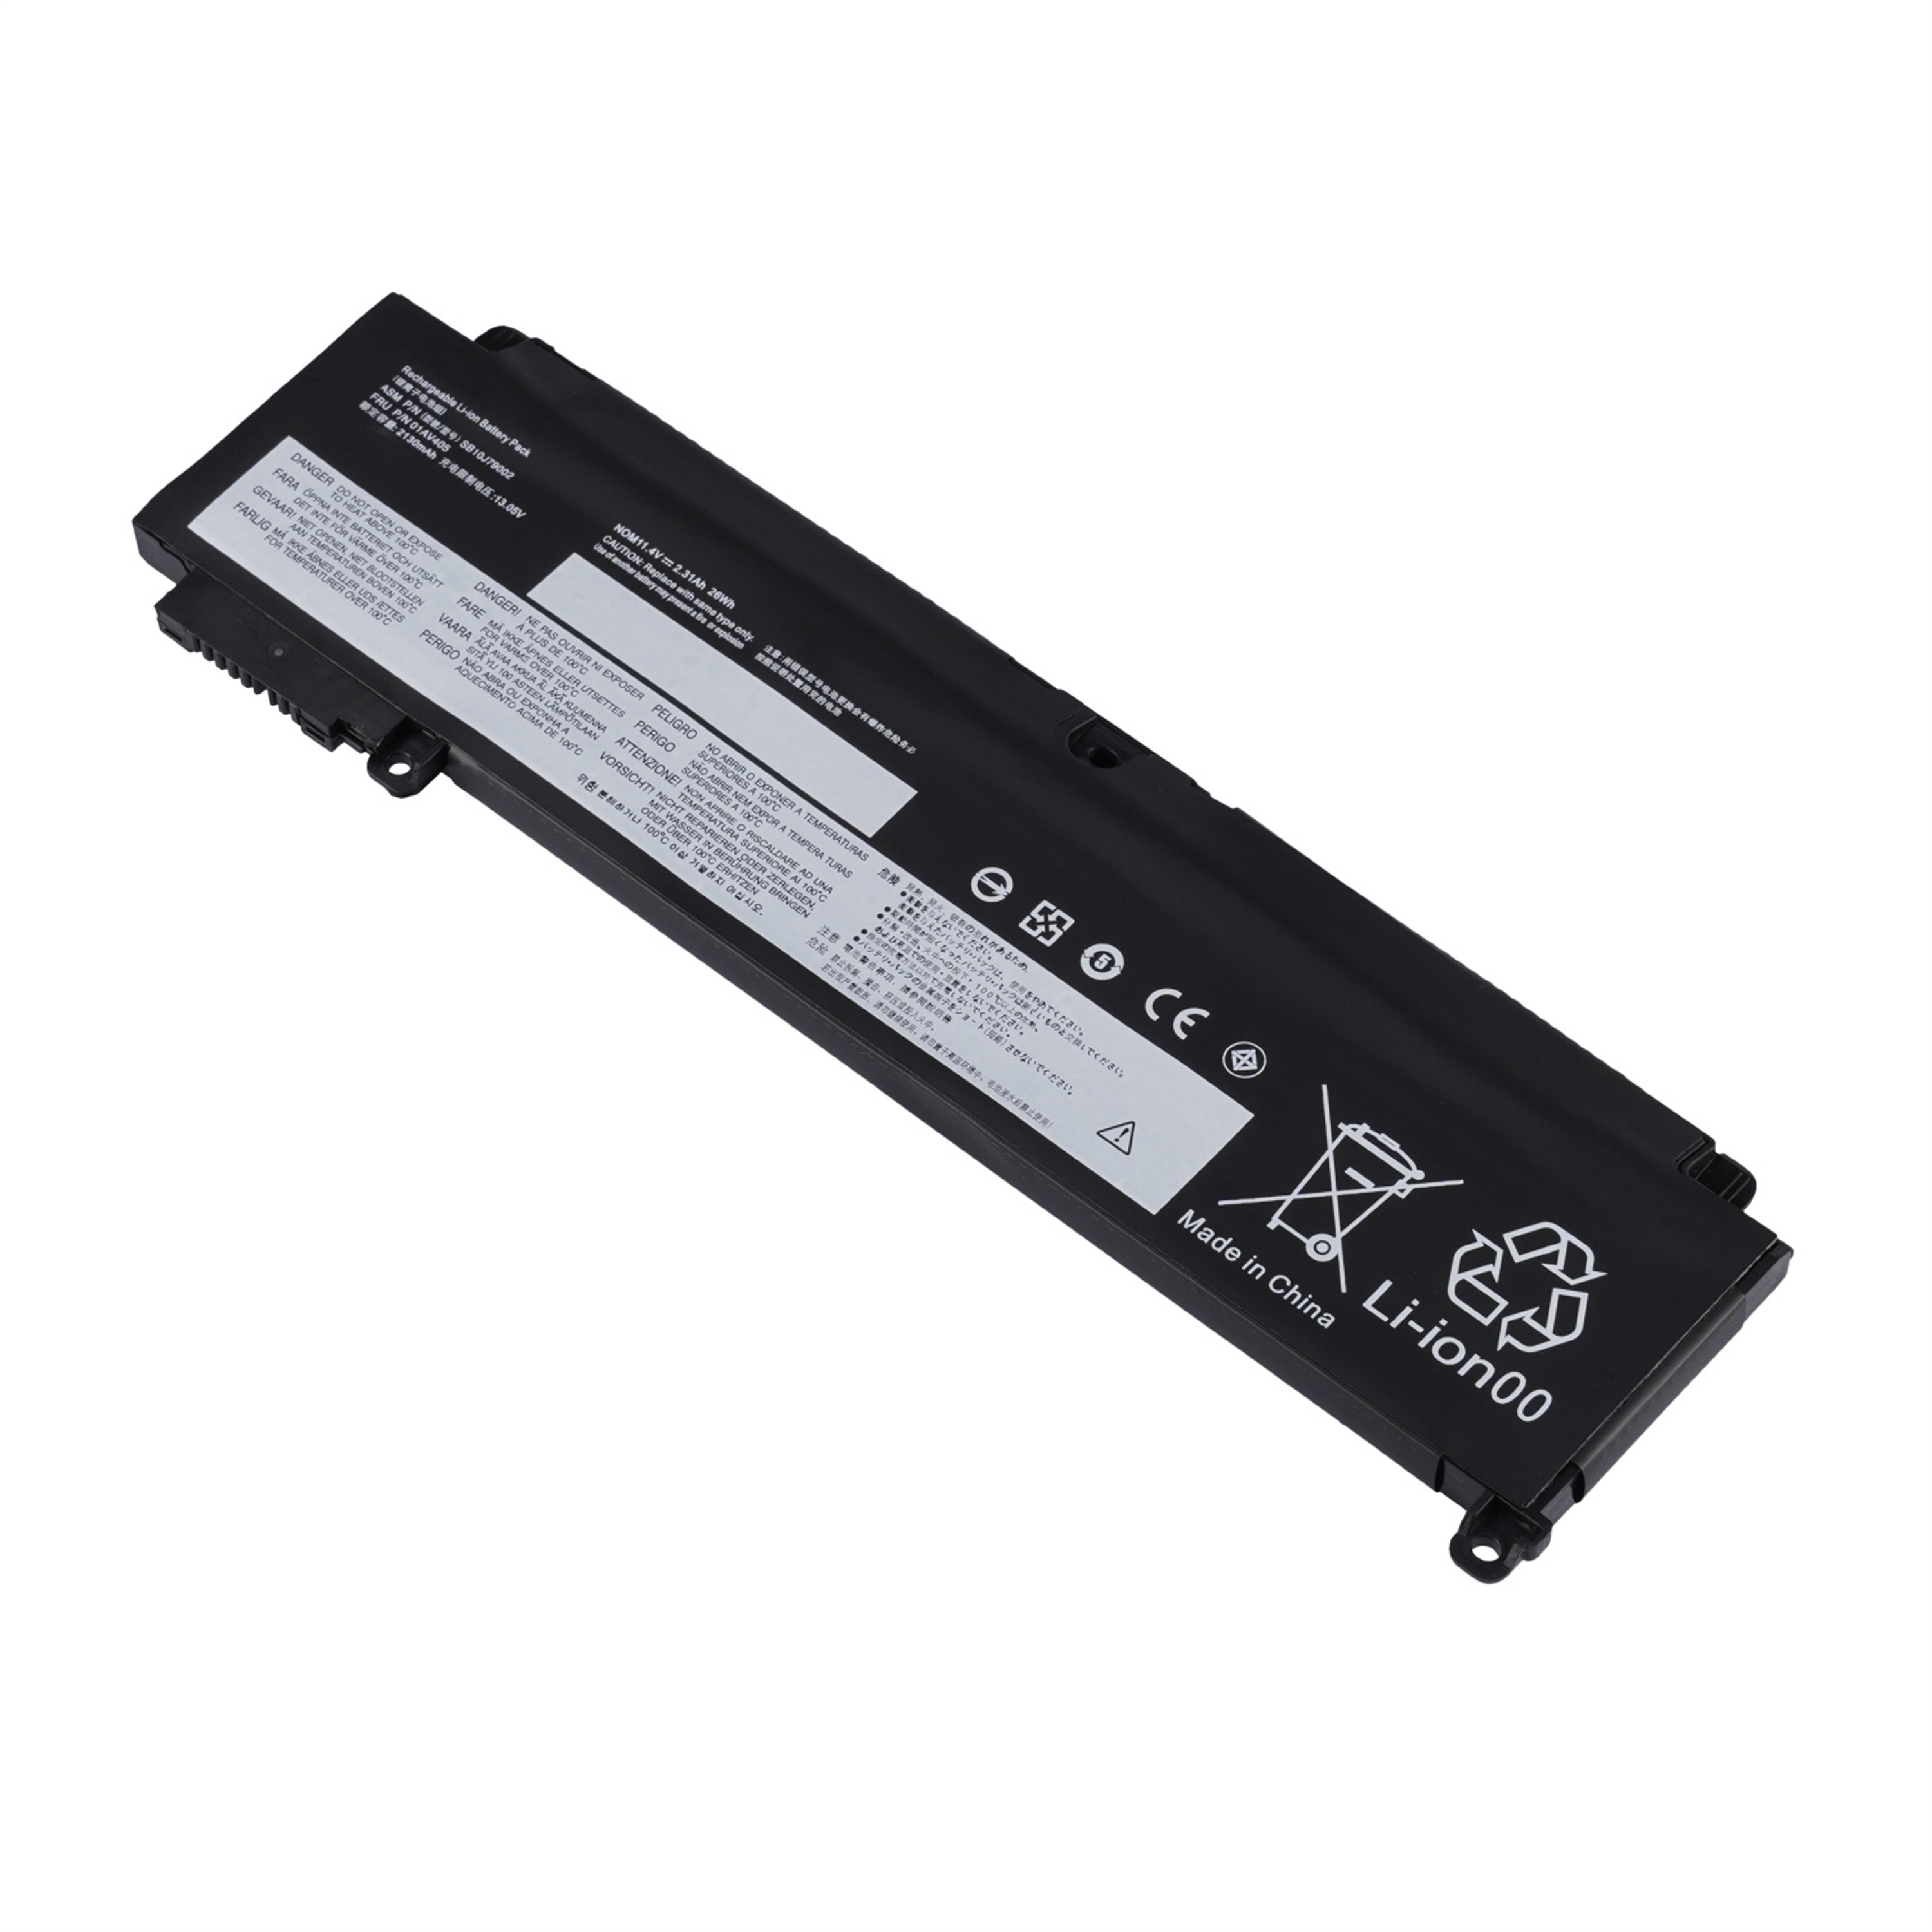 01AV405 rechargeable lithium ion Notebook battery Laptop battery LENOVO ThinkPad T460s 11.1V 24Wh